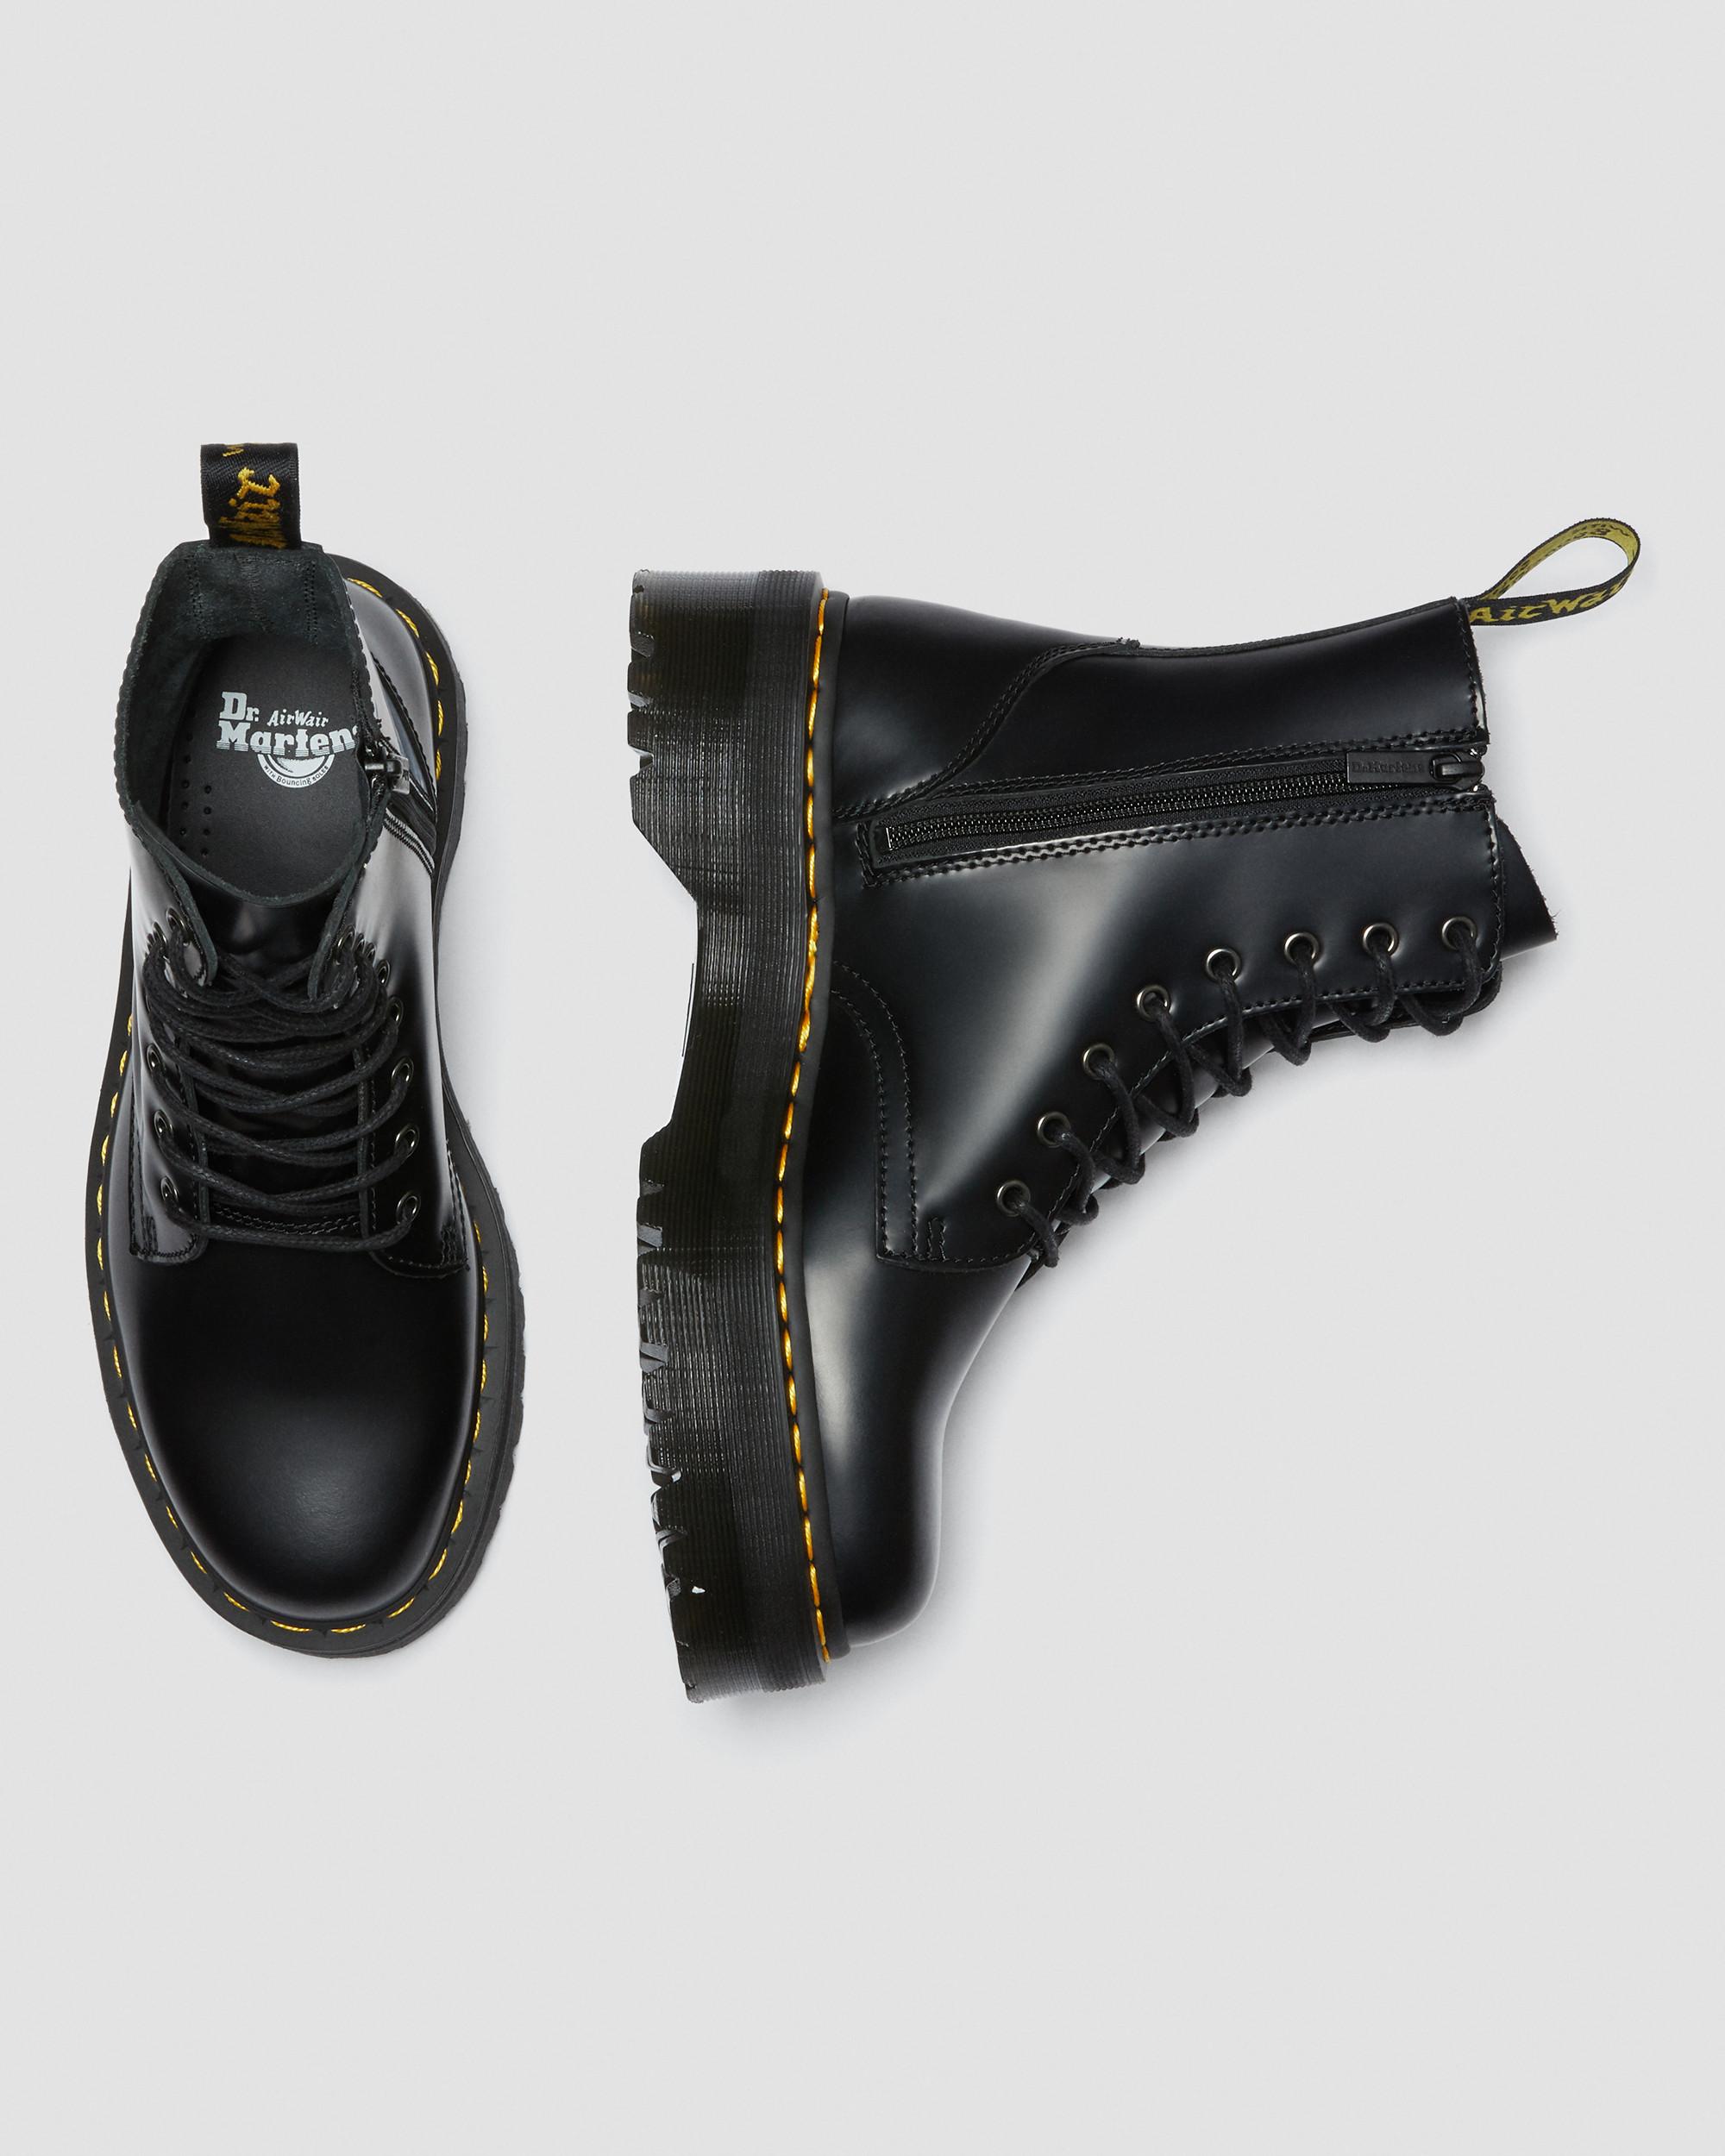 Jadon Smooth Leather Platform Boots in Black